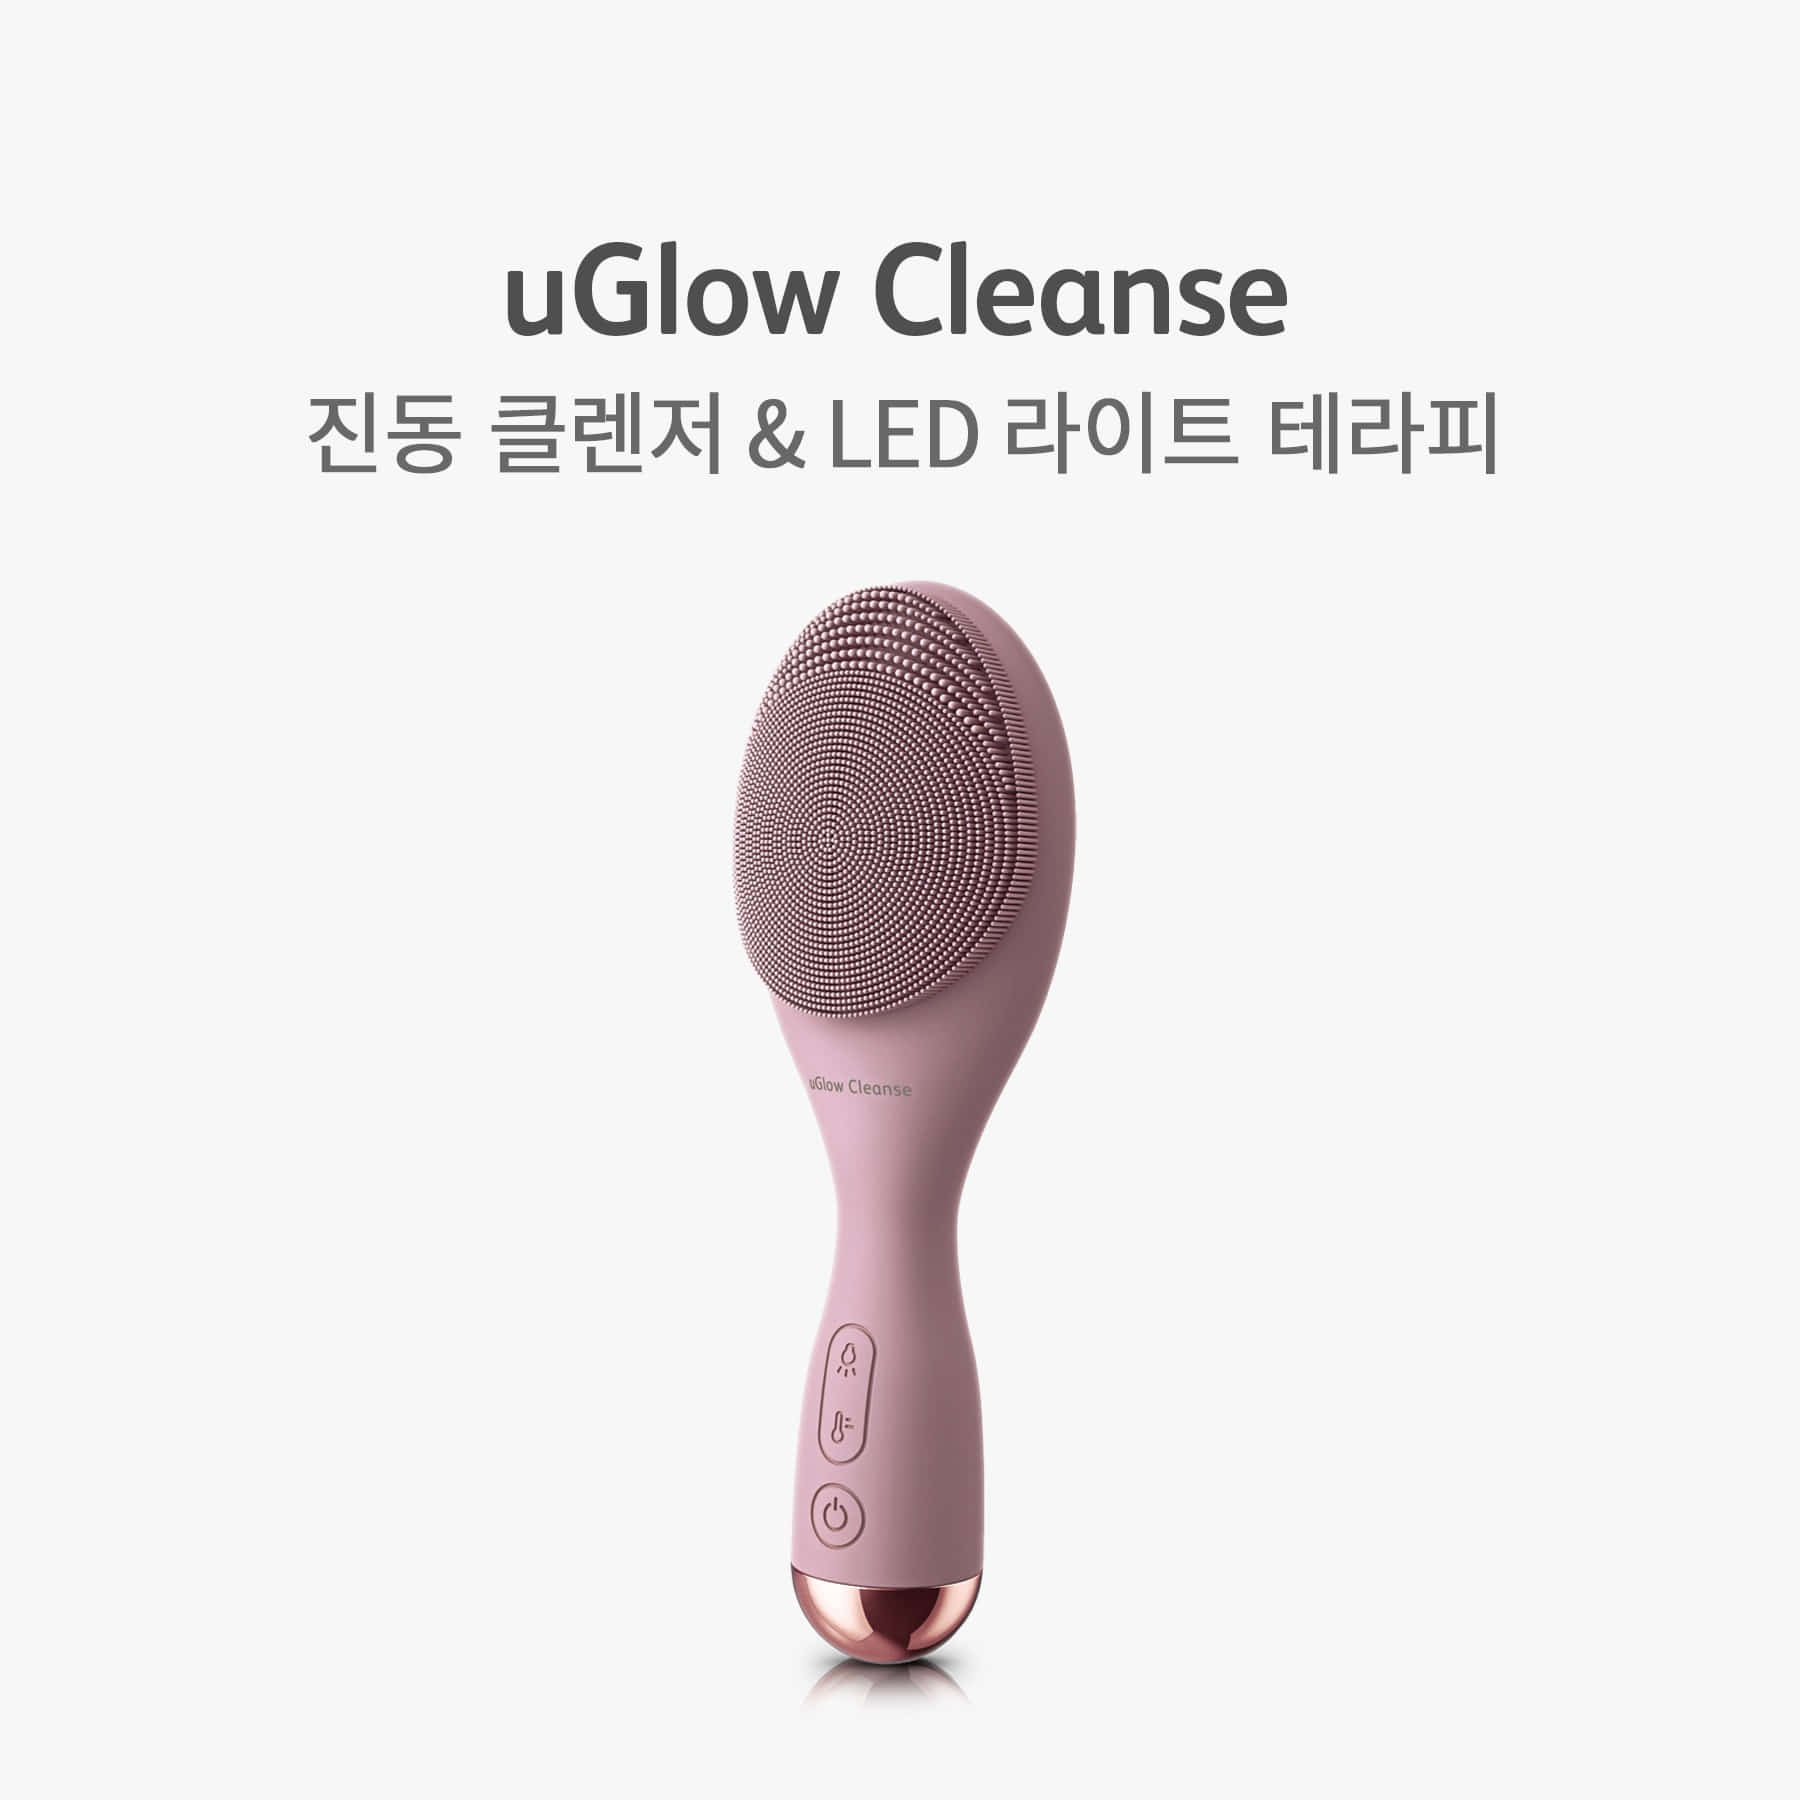 유글로우 클렌즈 (uGlow Cleanse, OS-1204)